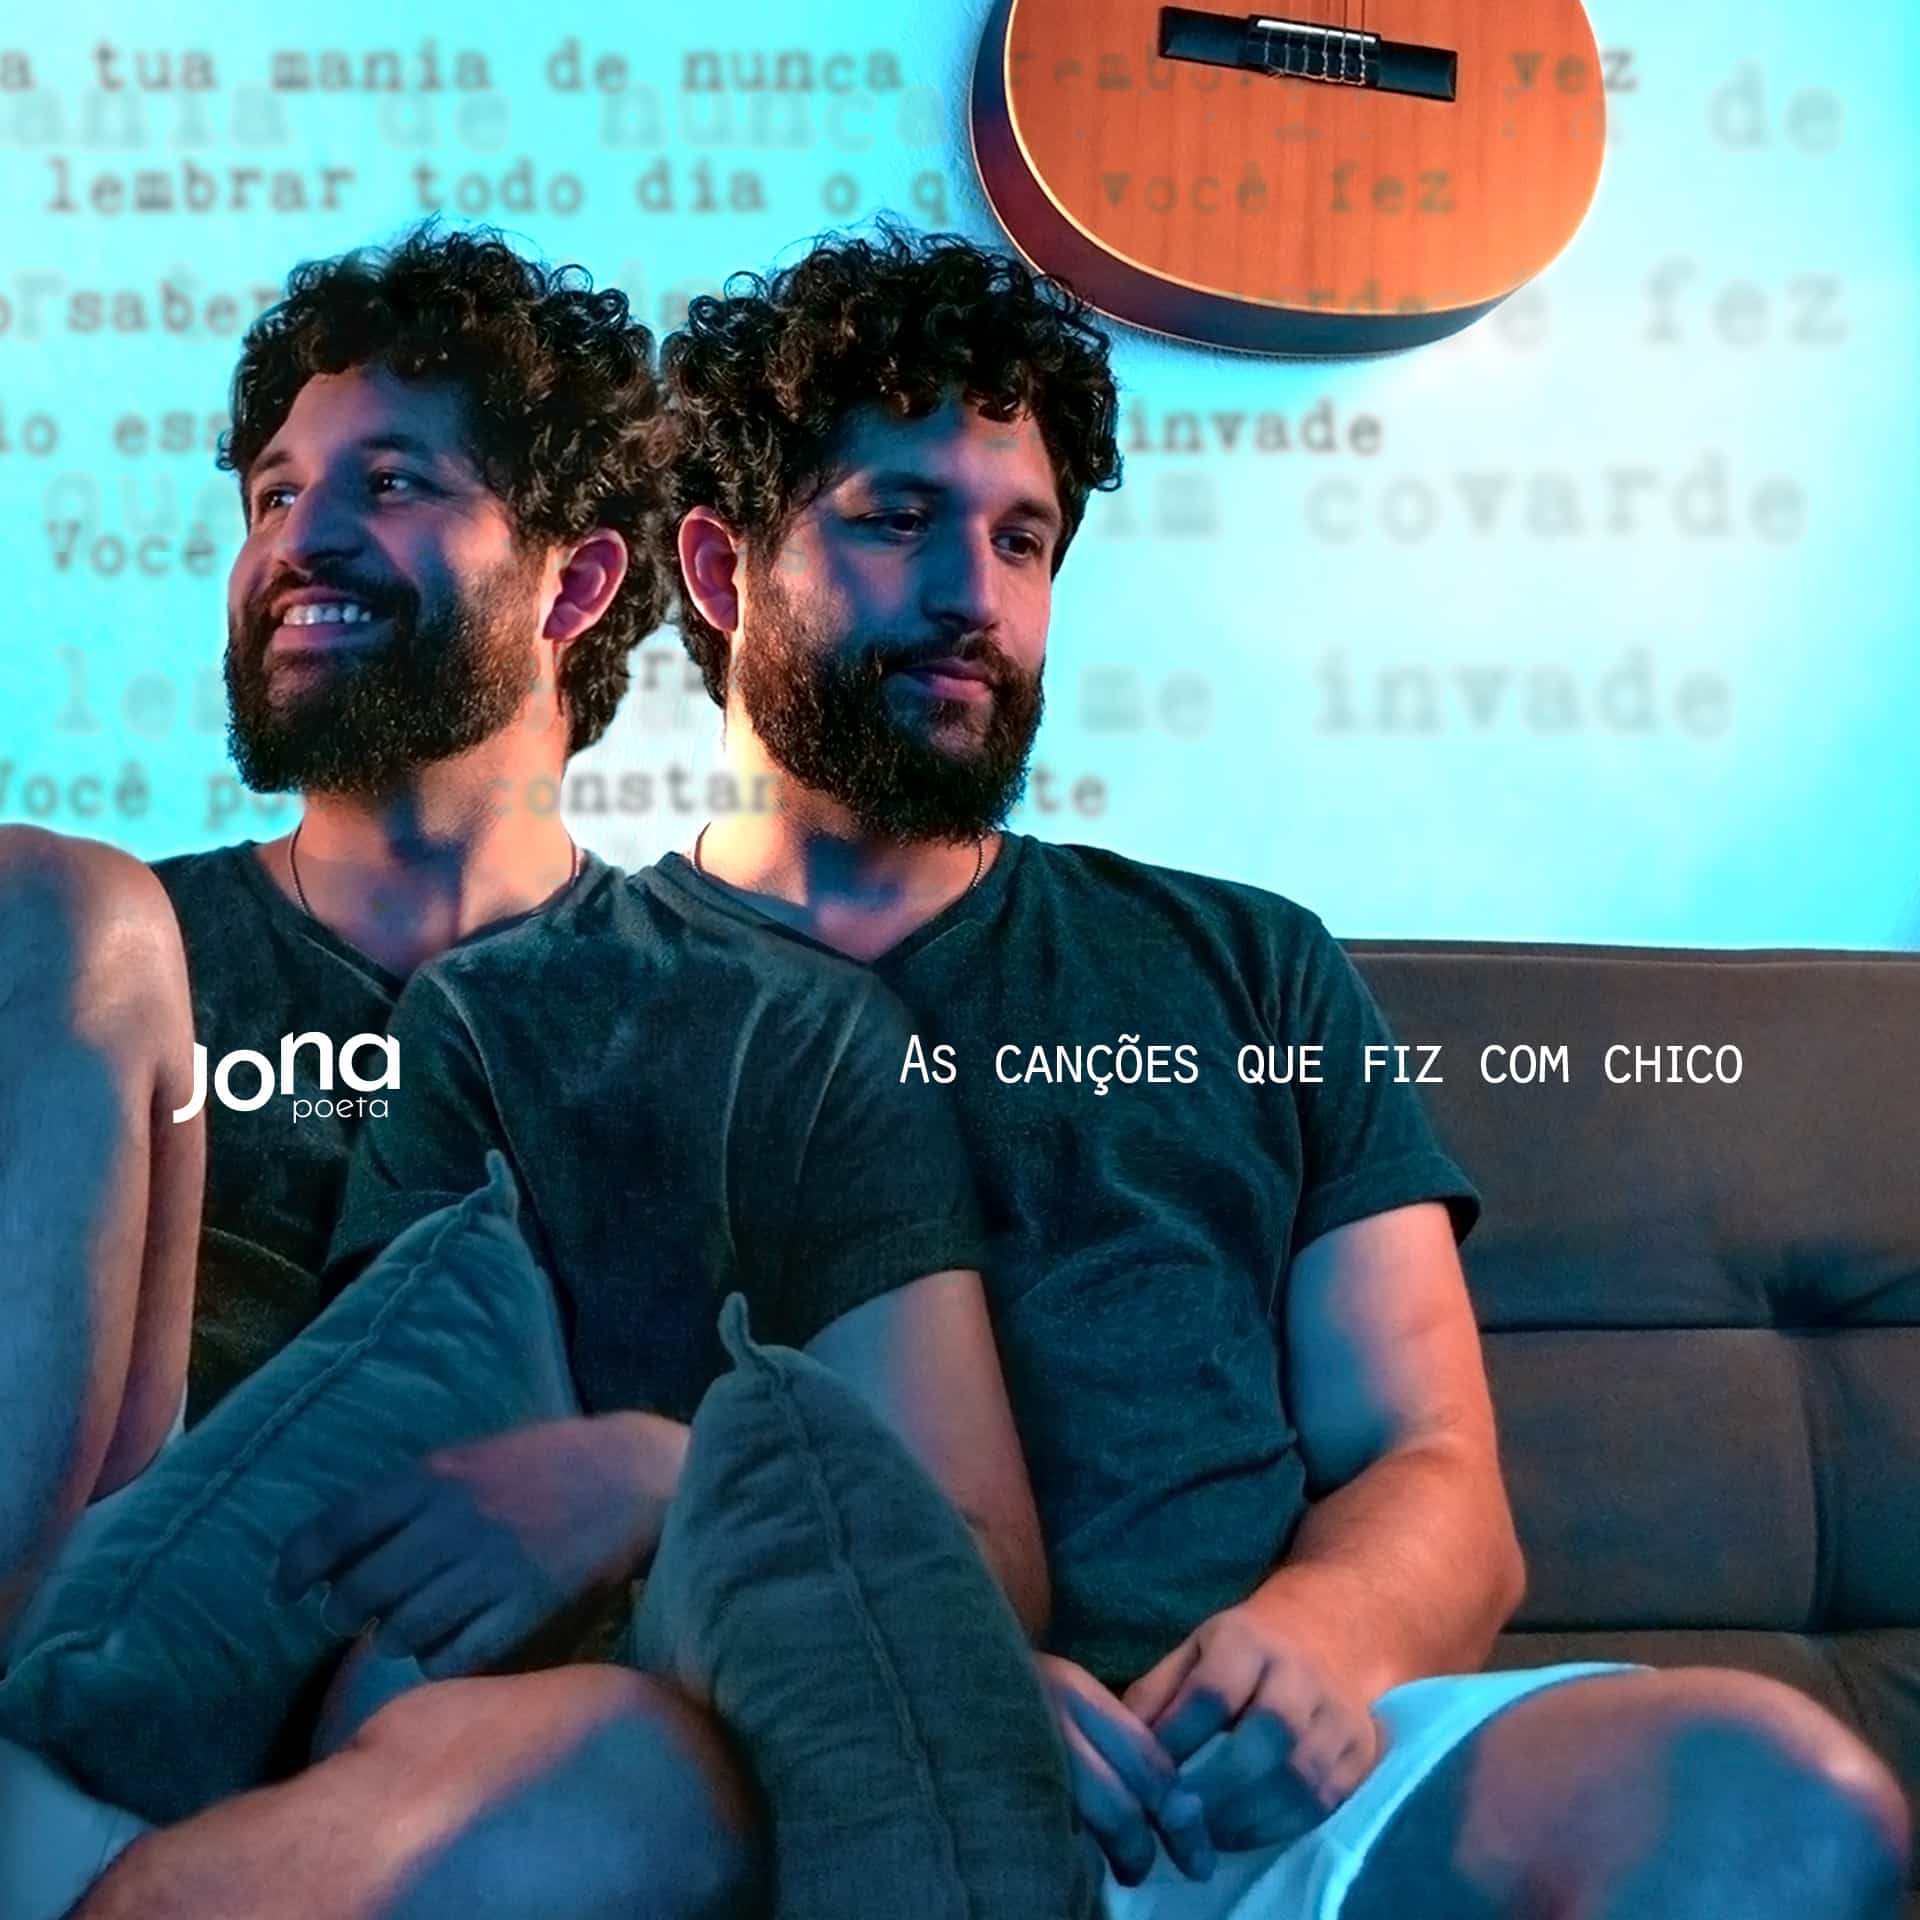 revistaprosaversoearte.com - Jona Poeta lança álbum 'As Canções Que Fiz Com Chico'